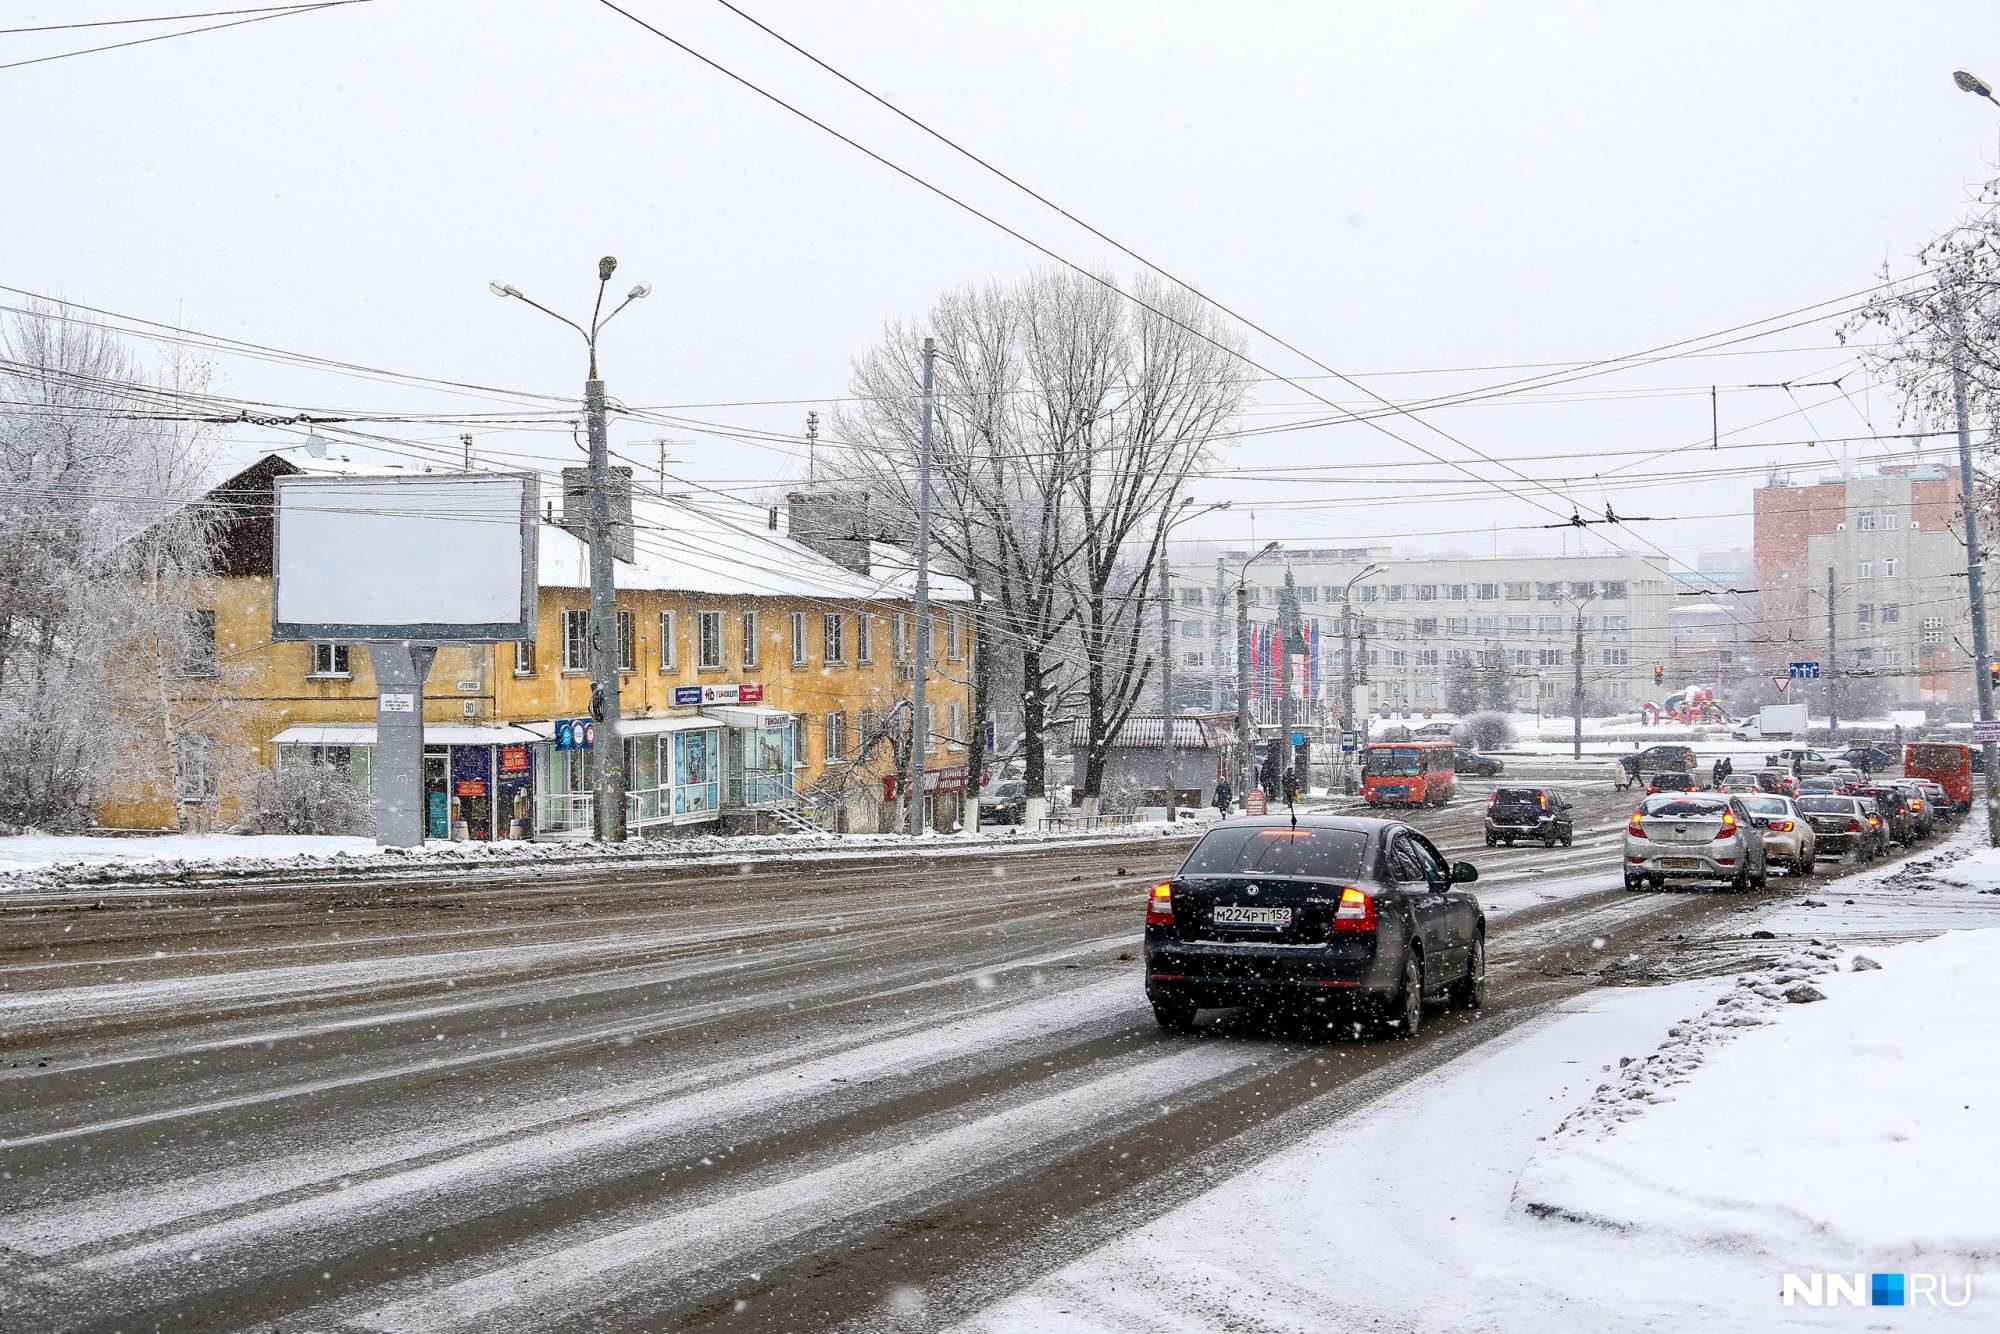 Новую транспортную схему в Нижнем Новгороде запустят летом 2022 года. Маршрутная сеть не исключит пересадок